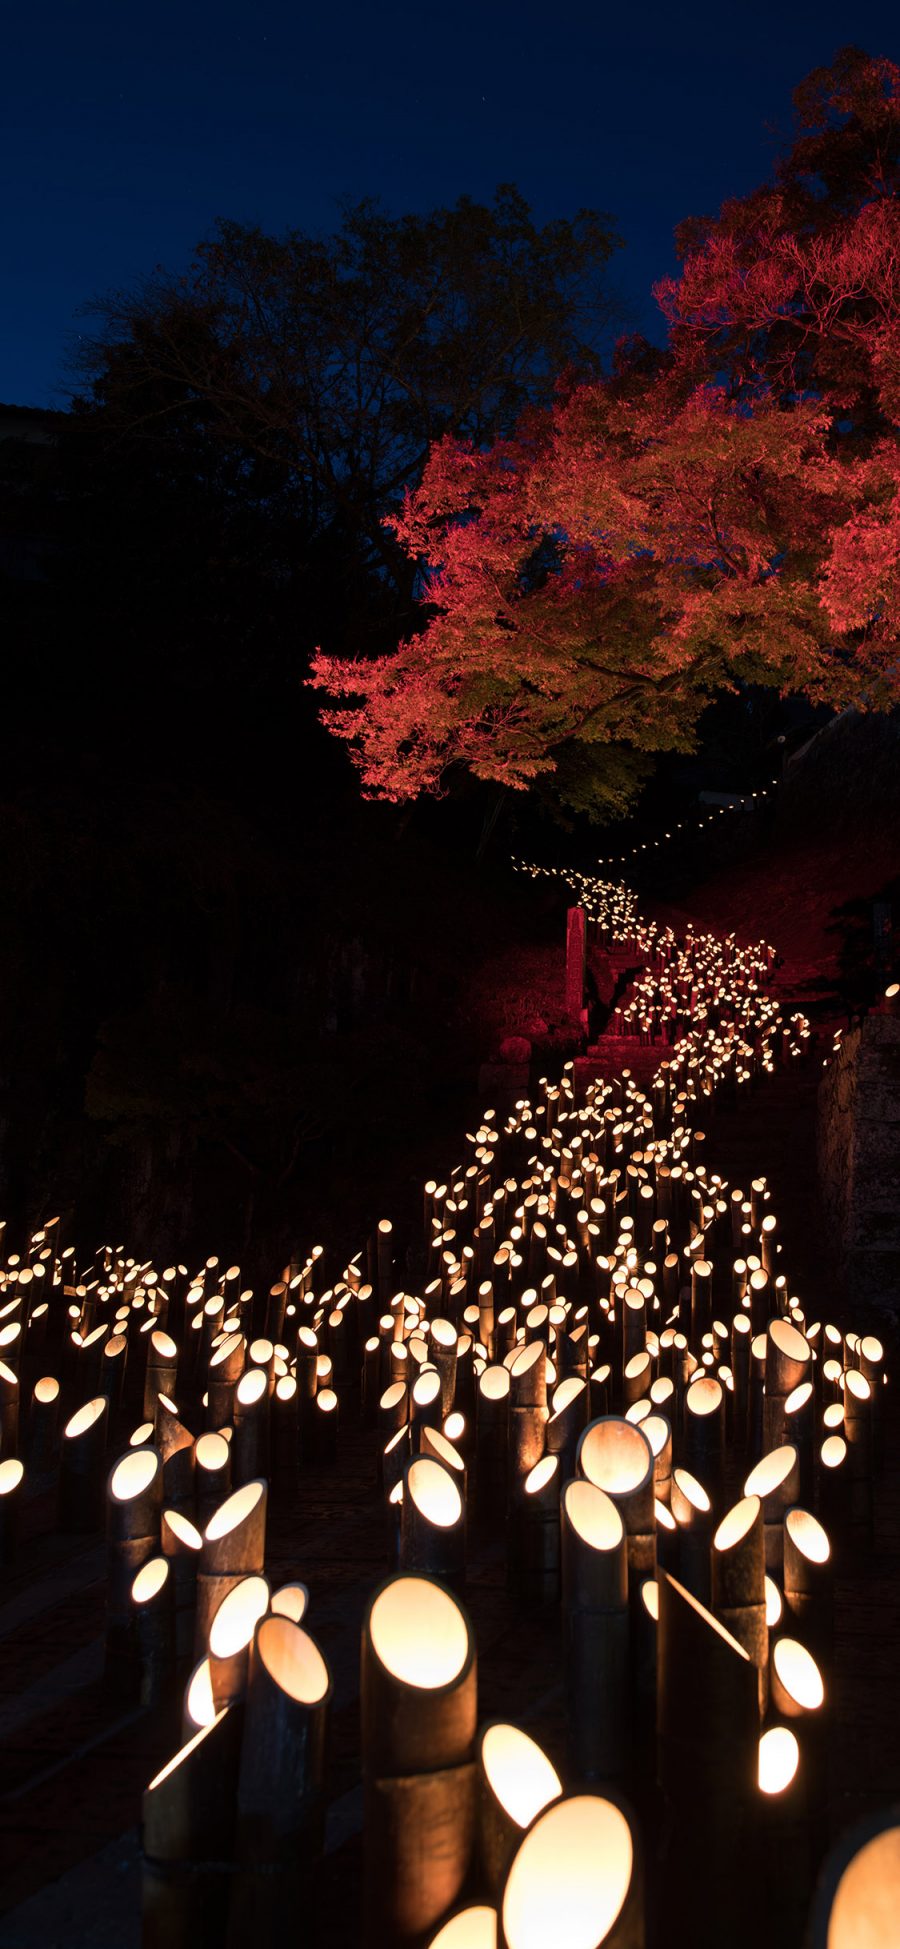 [2436×1125]夜景 创意 竹子 灯光 照明 苹果手机壁纸图片